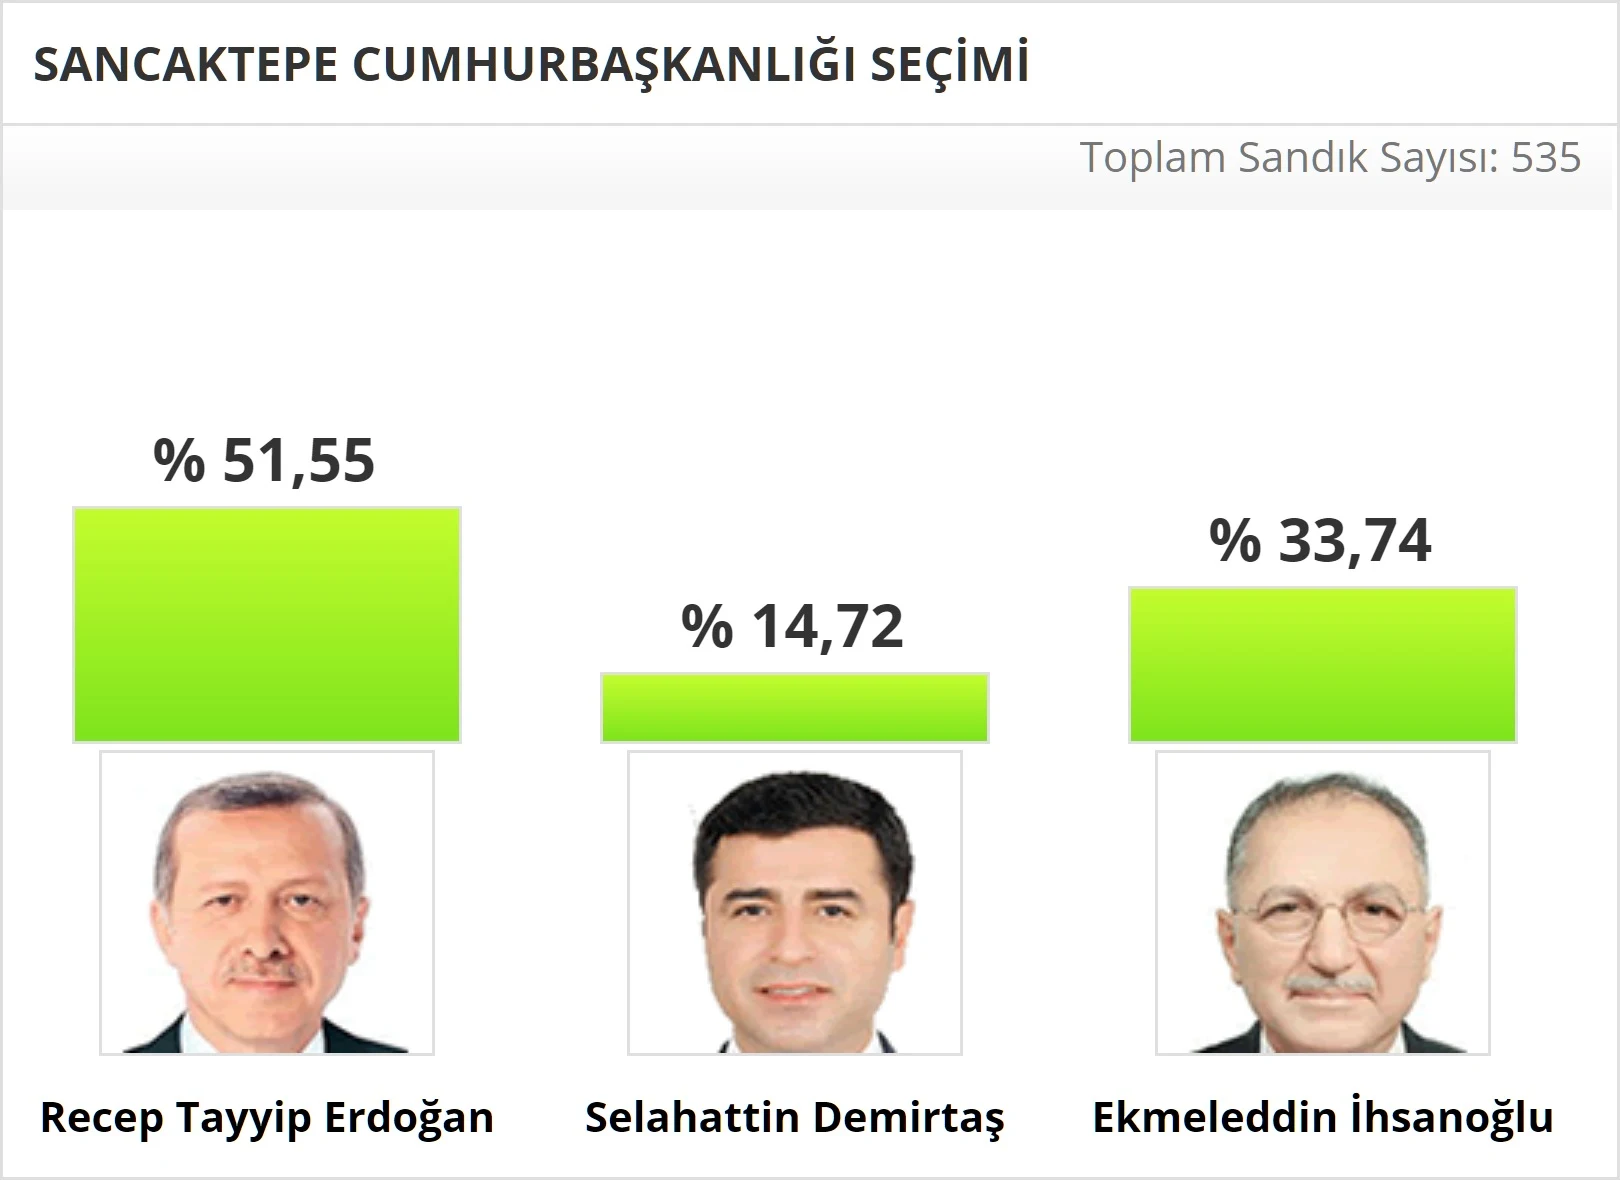 2014 Sancaktepe Cumhurbaşkanlığı Seçim Sonuçları